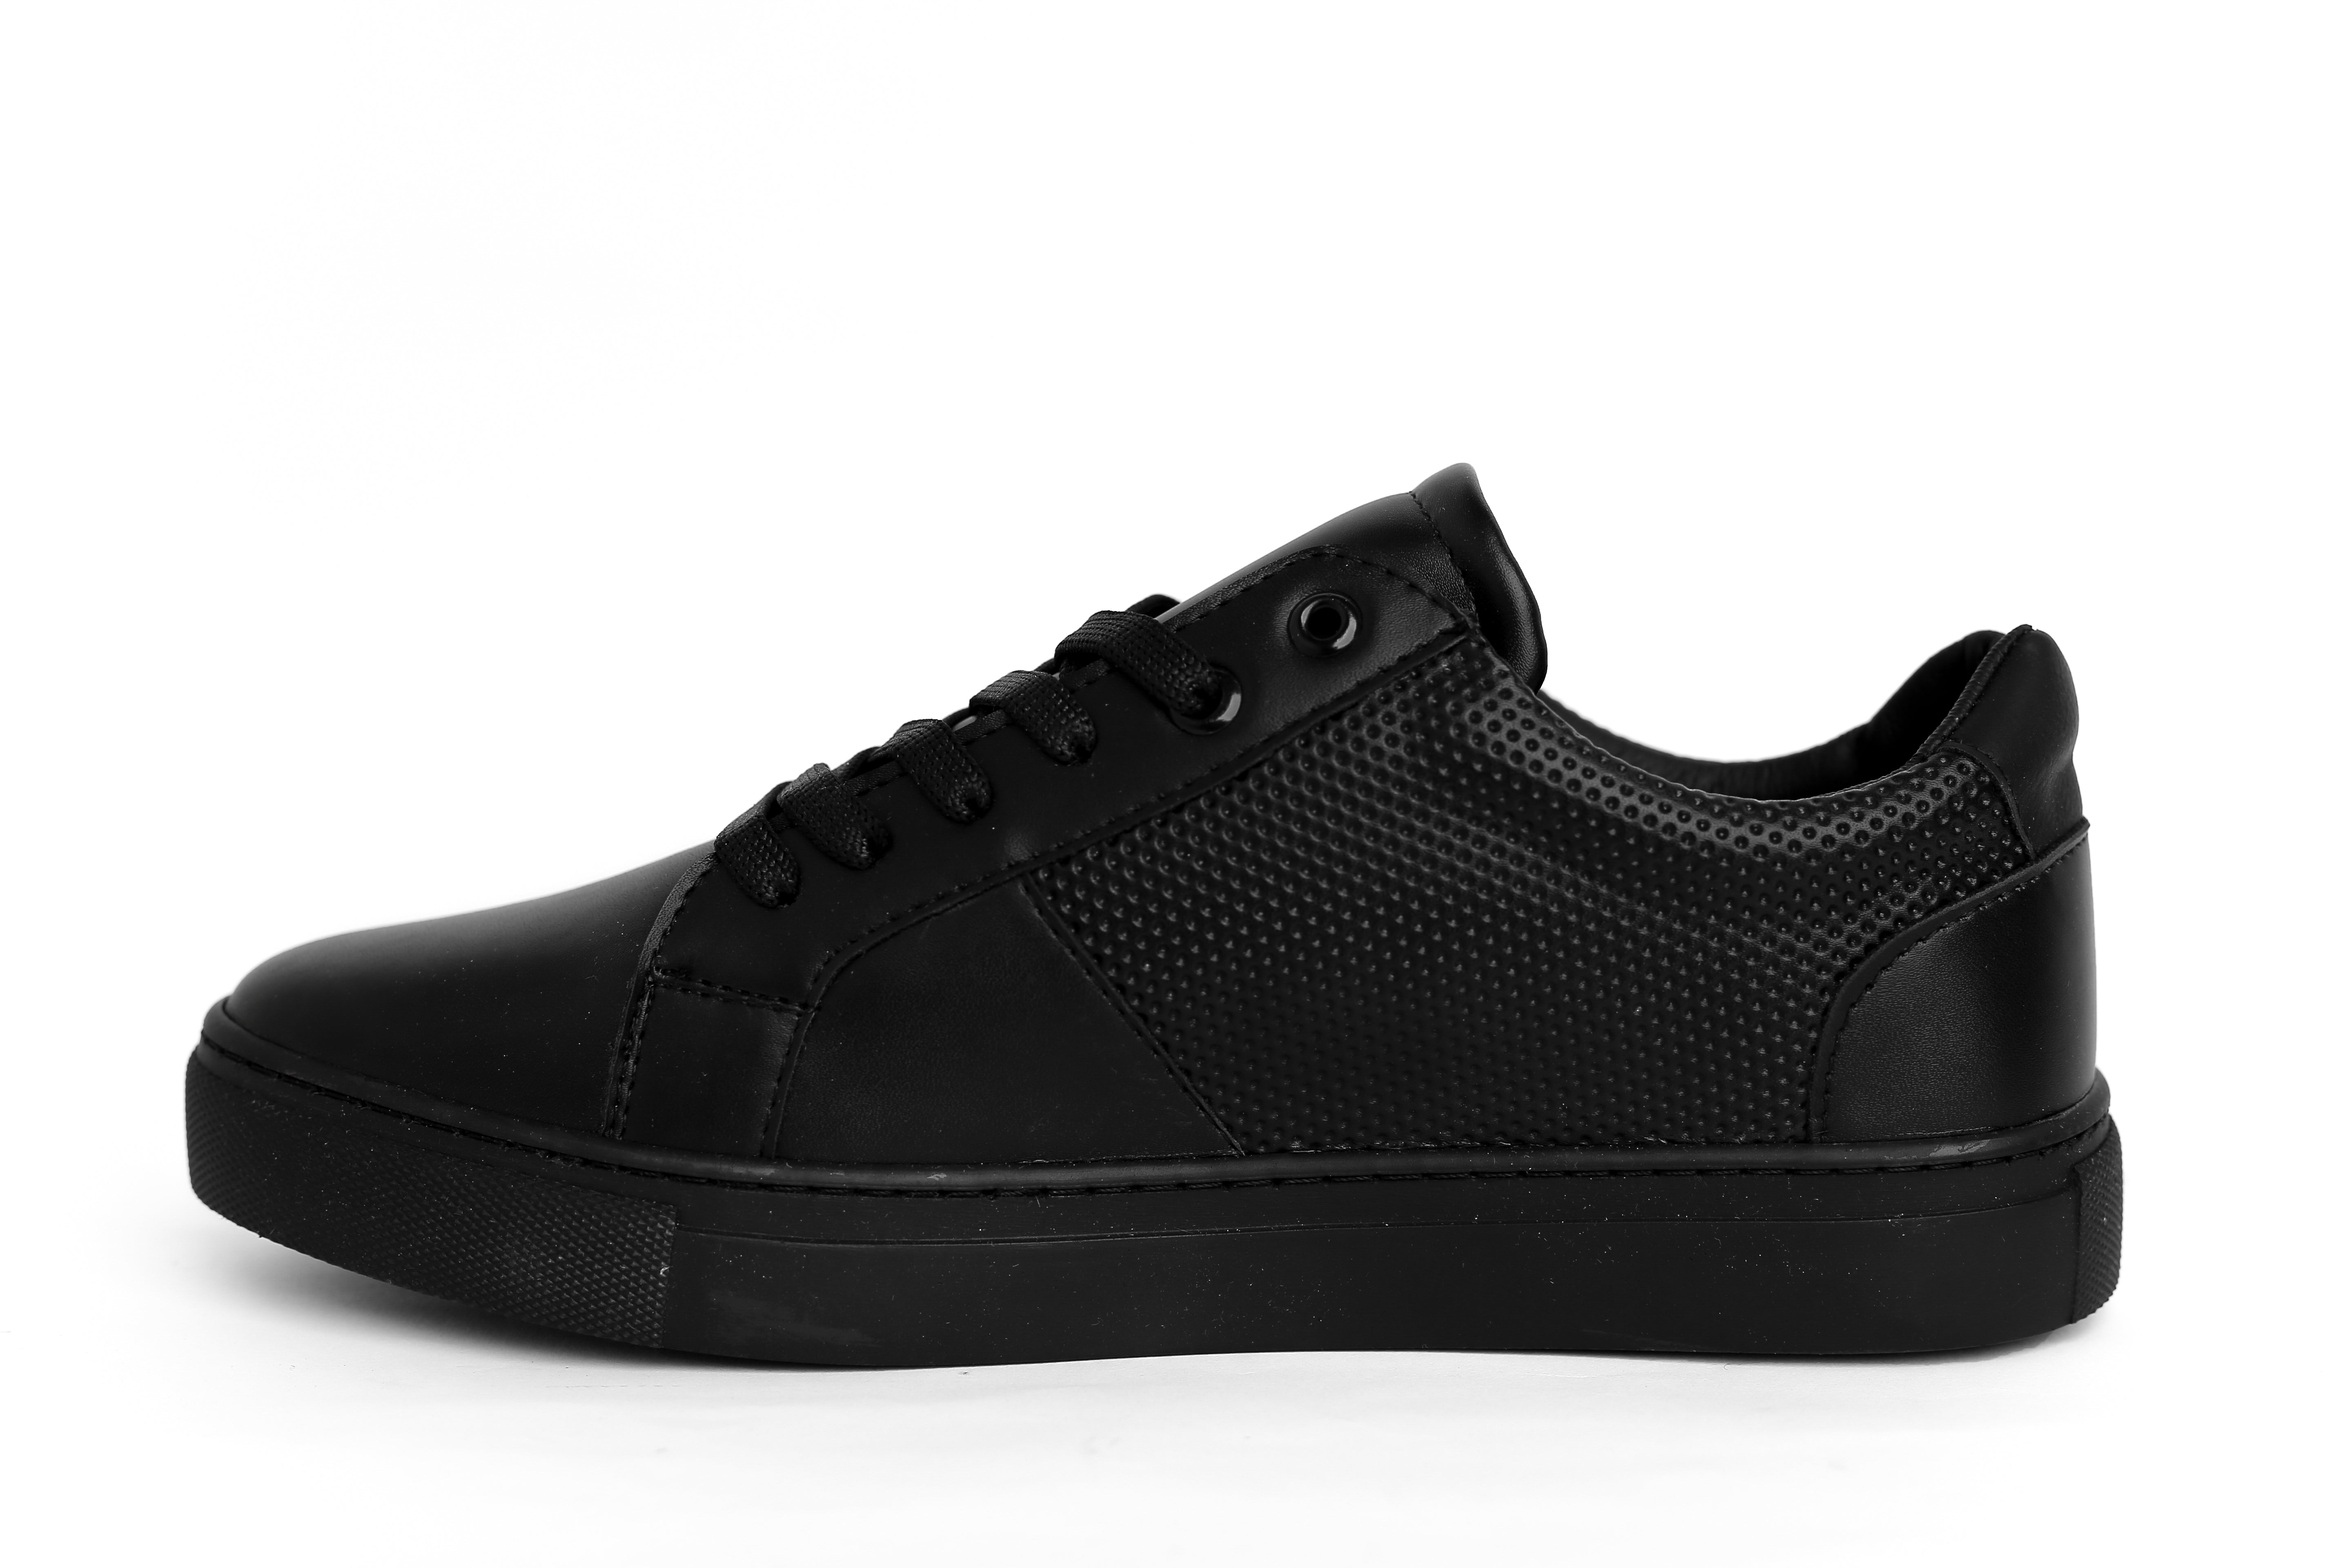 Koka's Black Men's Fashion Sneaker - Trendy & Comfortable Footwear